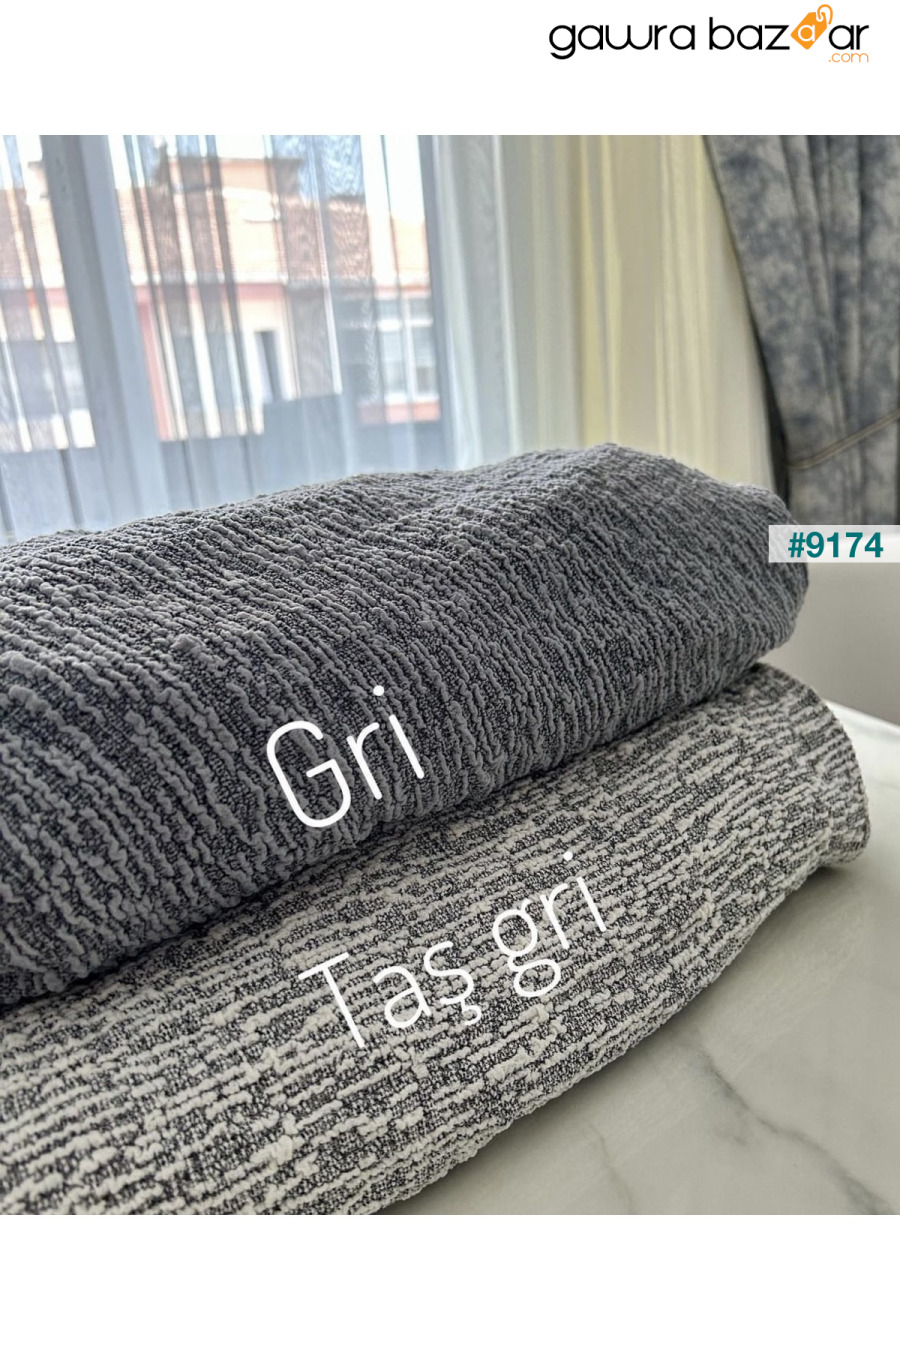 غطاء أريكة جاكار 3 مقاعد، غطاء أريكة سرير (محتوى المنتج قطعة واحدة) رمادي حجري uzhanem 7